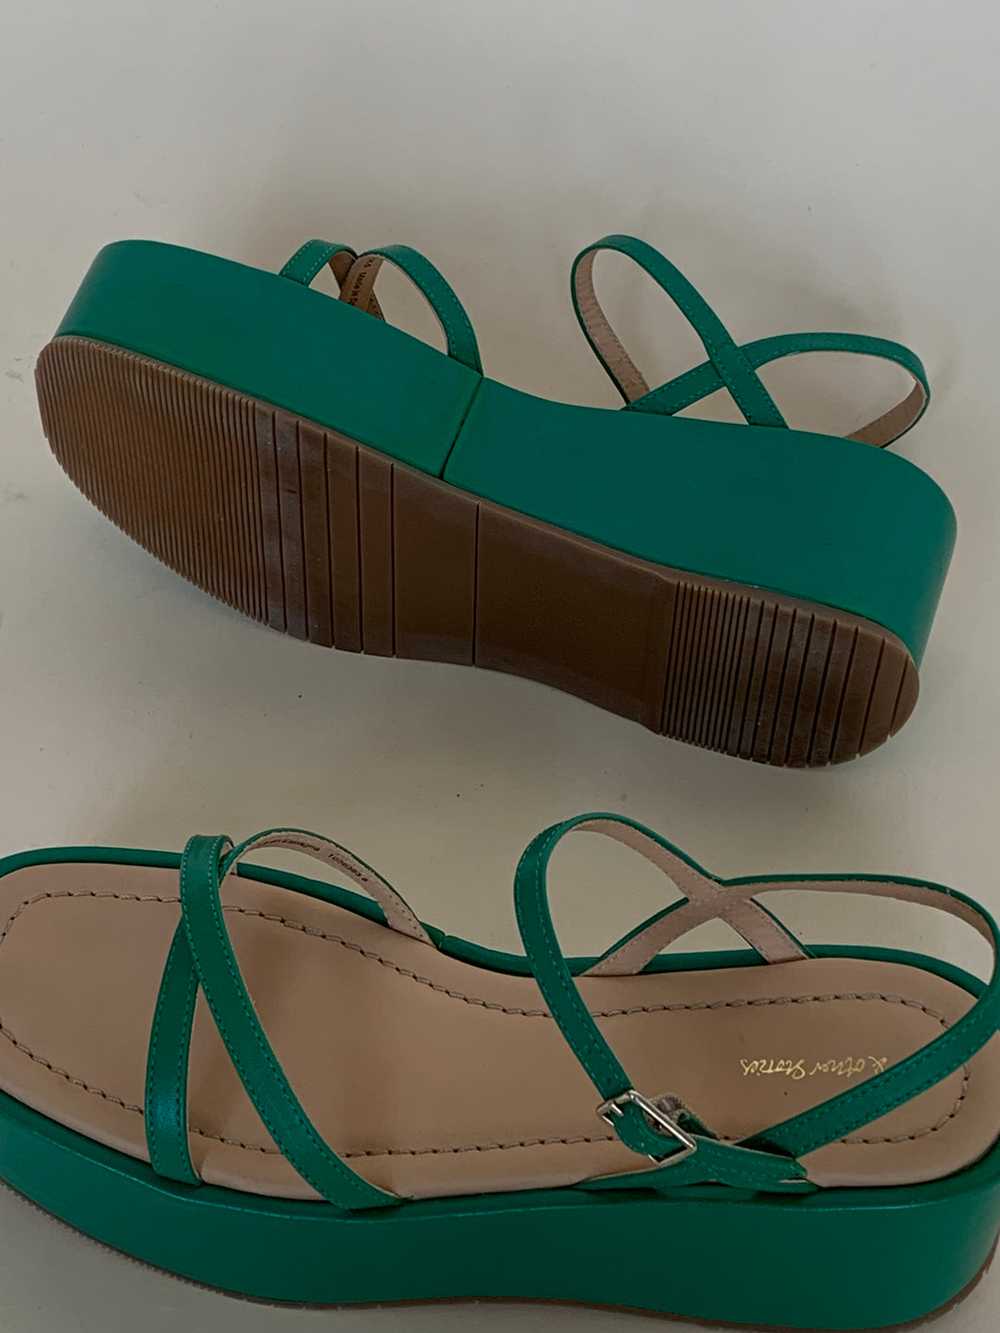 Green platform sandals - image 3